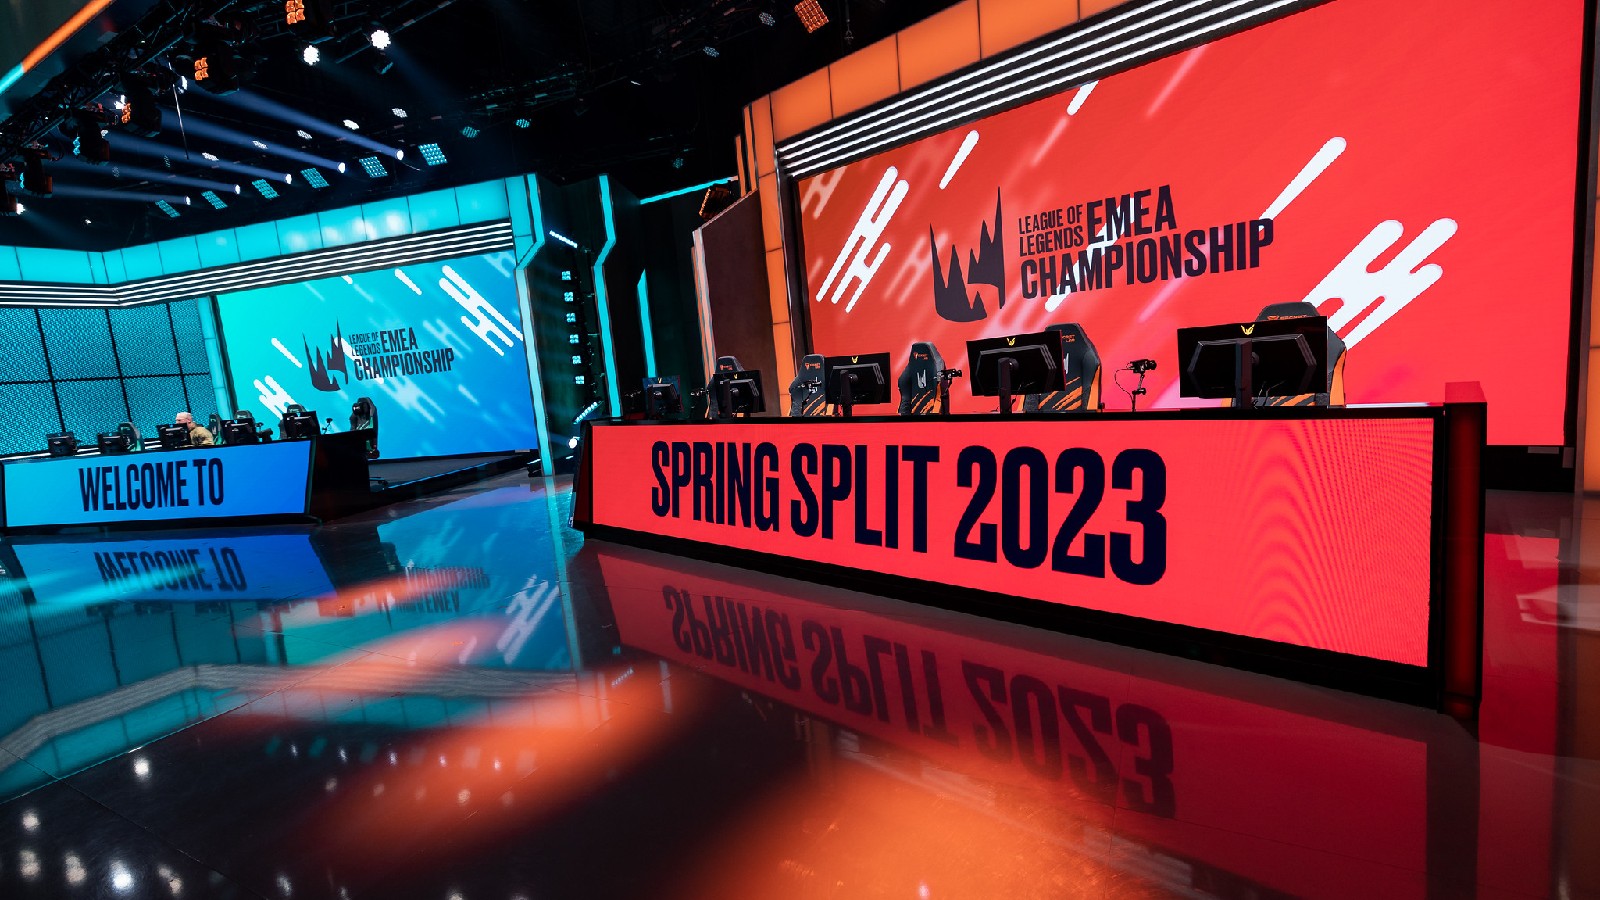 LEC 2023 Spring Split starts April 8, 2023